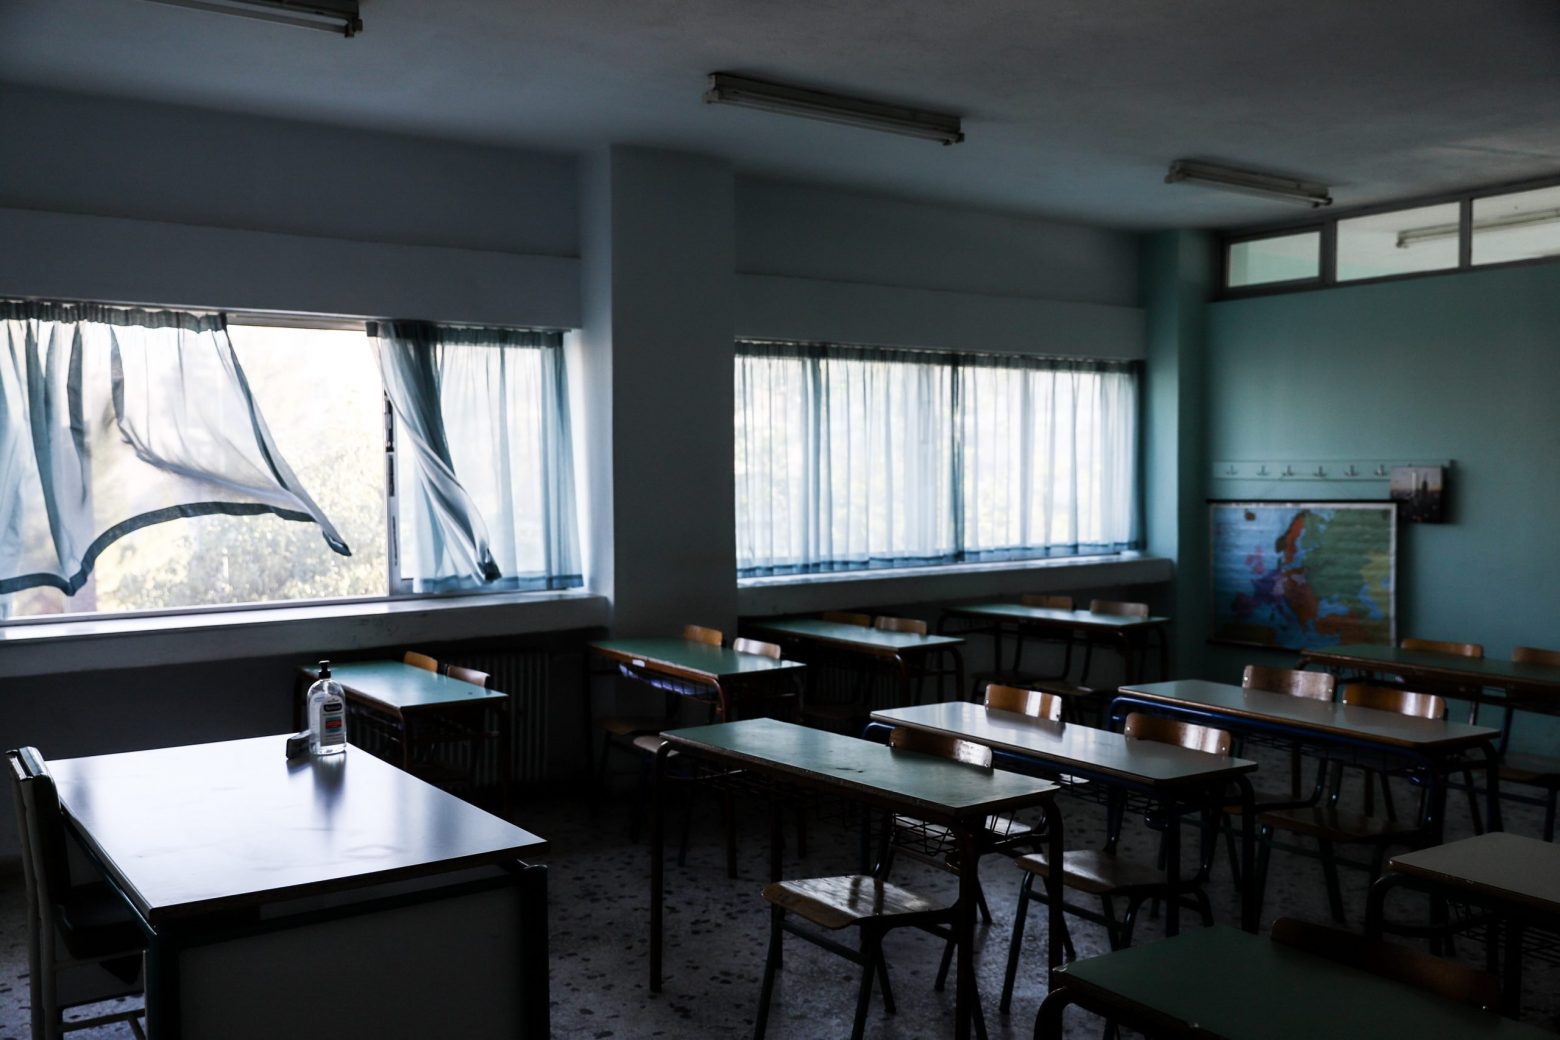 Ψαλτοπούλου: Τι θα κρίνει αν θα κλείσουν ή όχι τα σχολεία